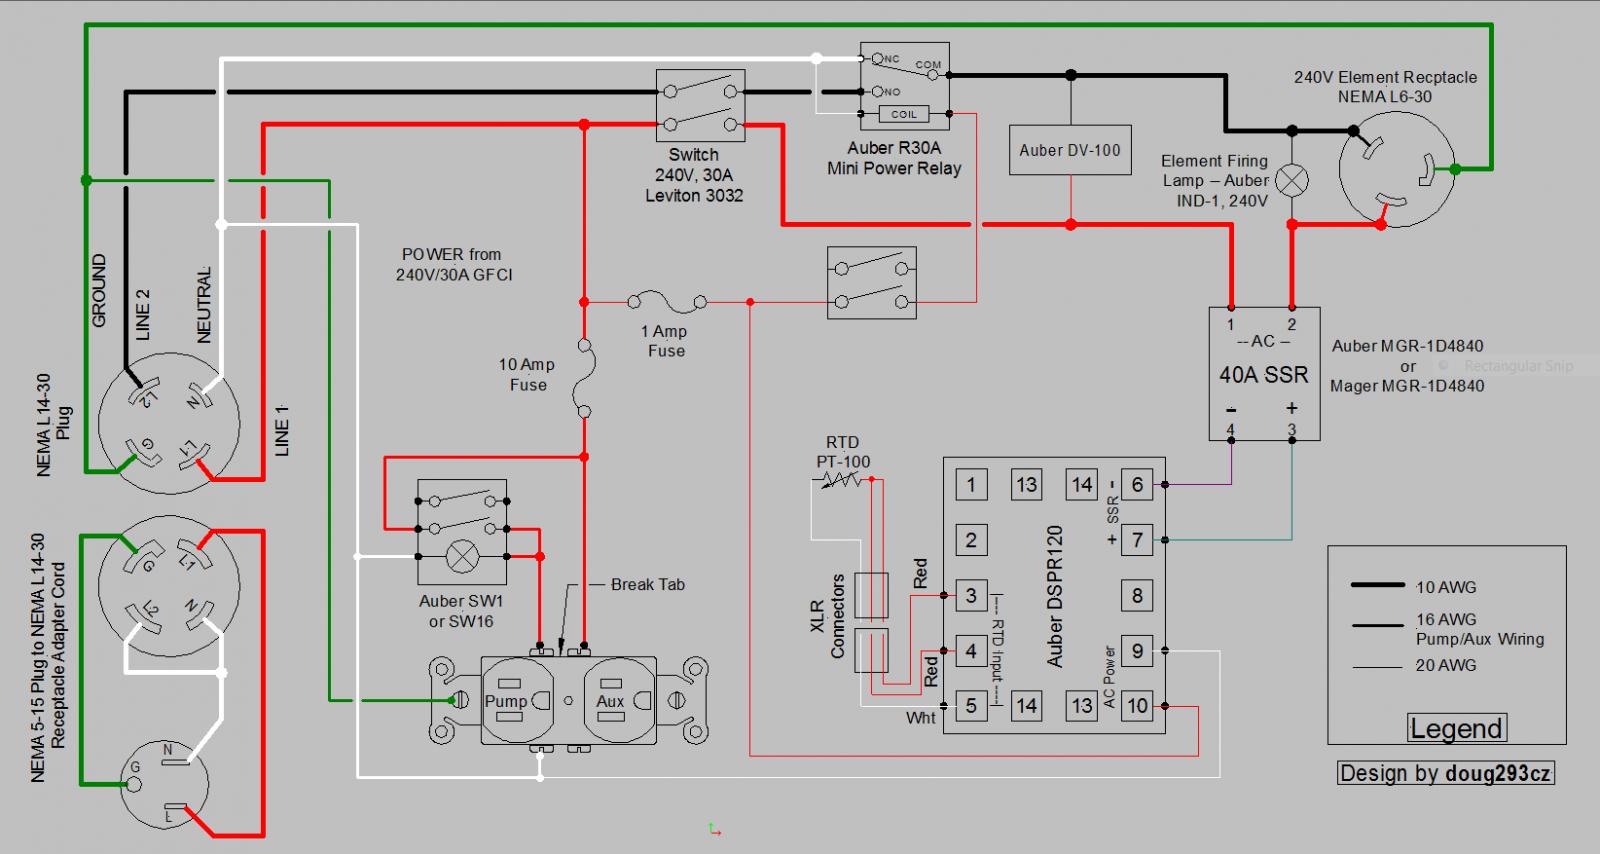 dspr120-dv-100-1-pump-1-aux-dual-voltage-input-output-jpg.379978